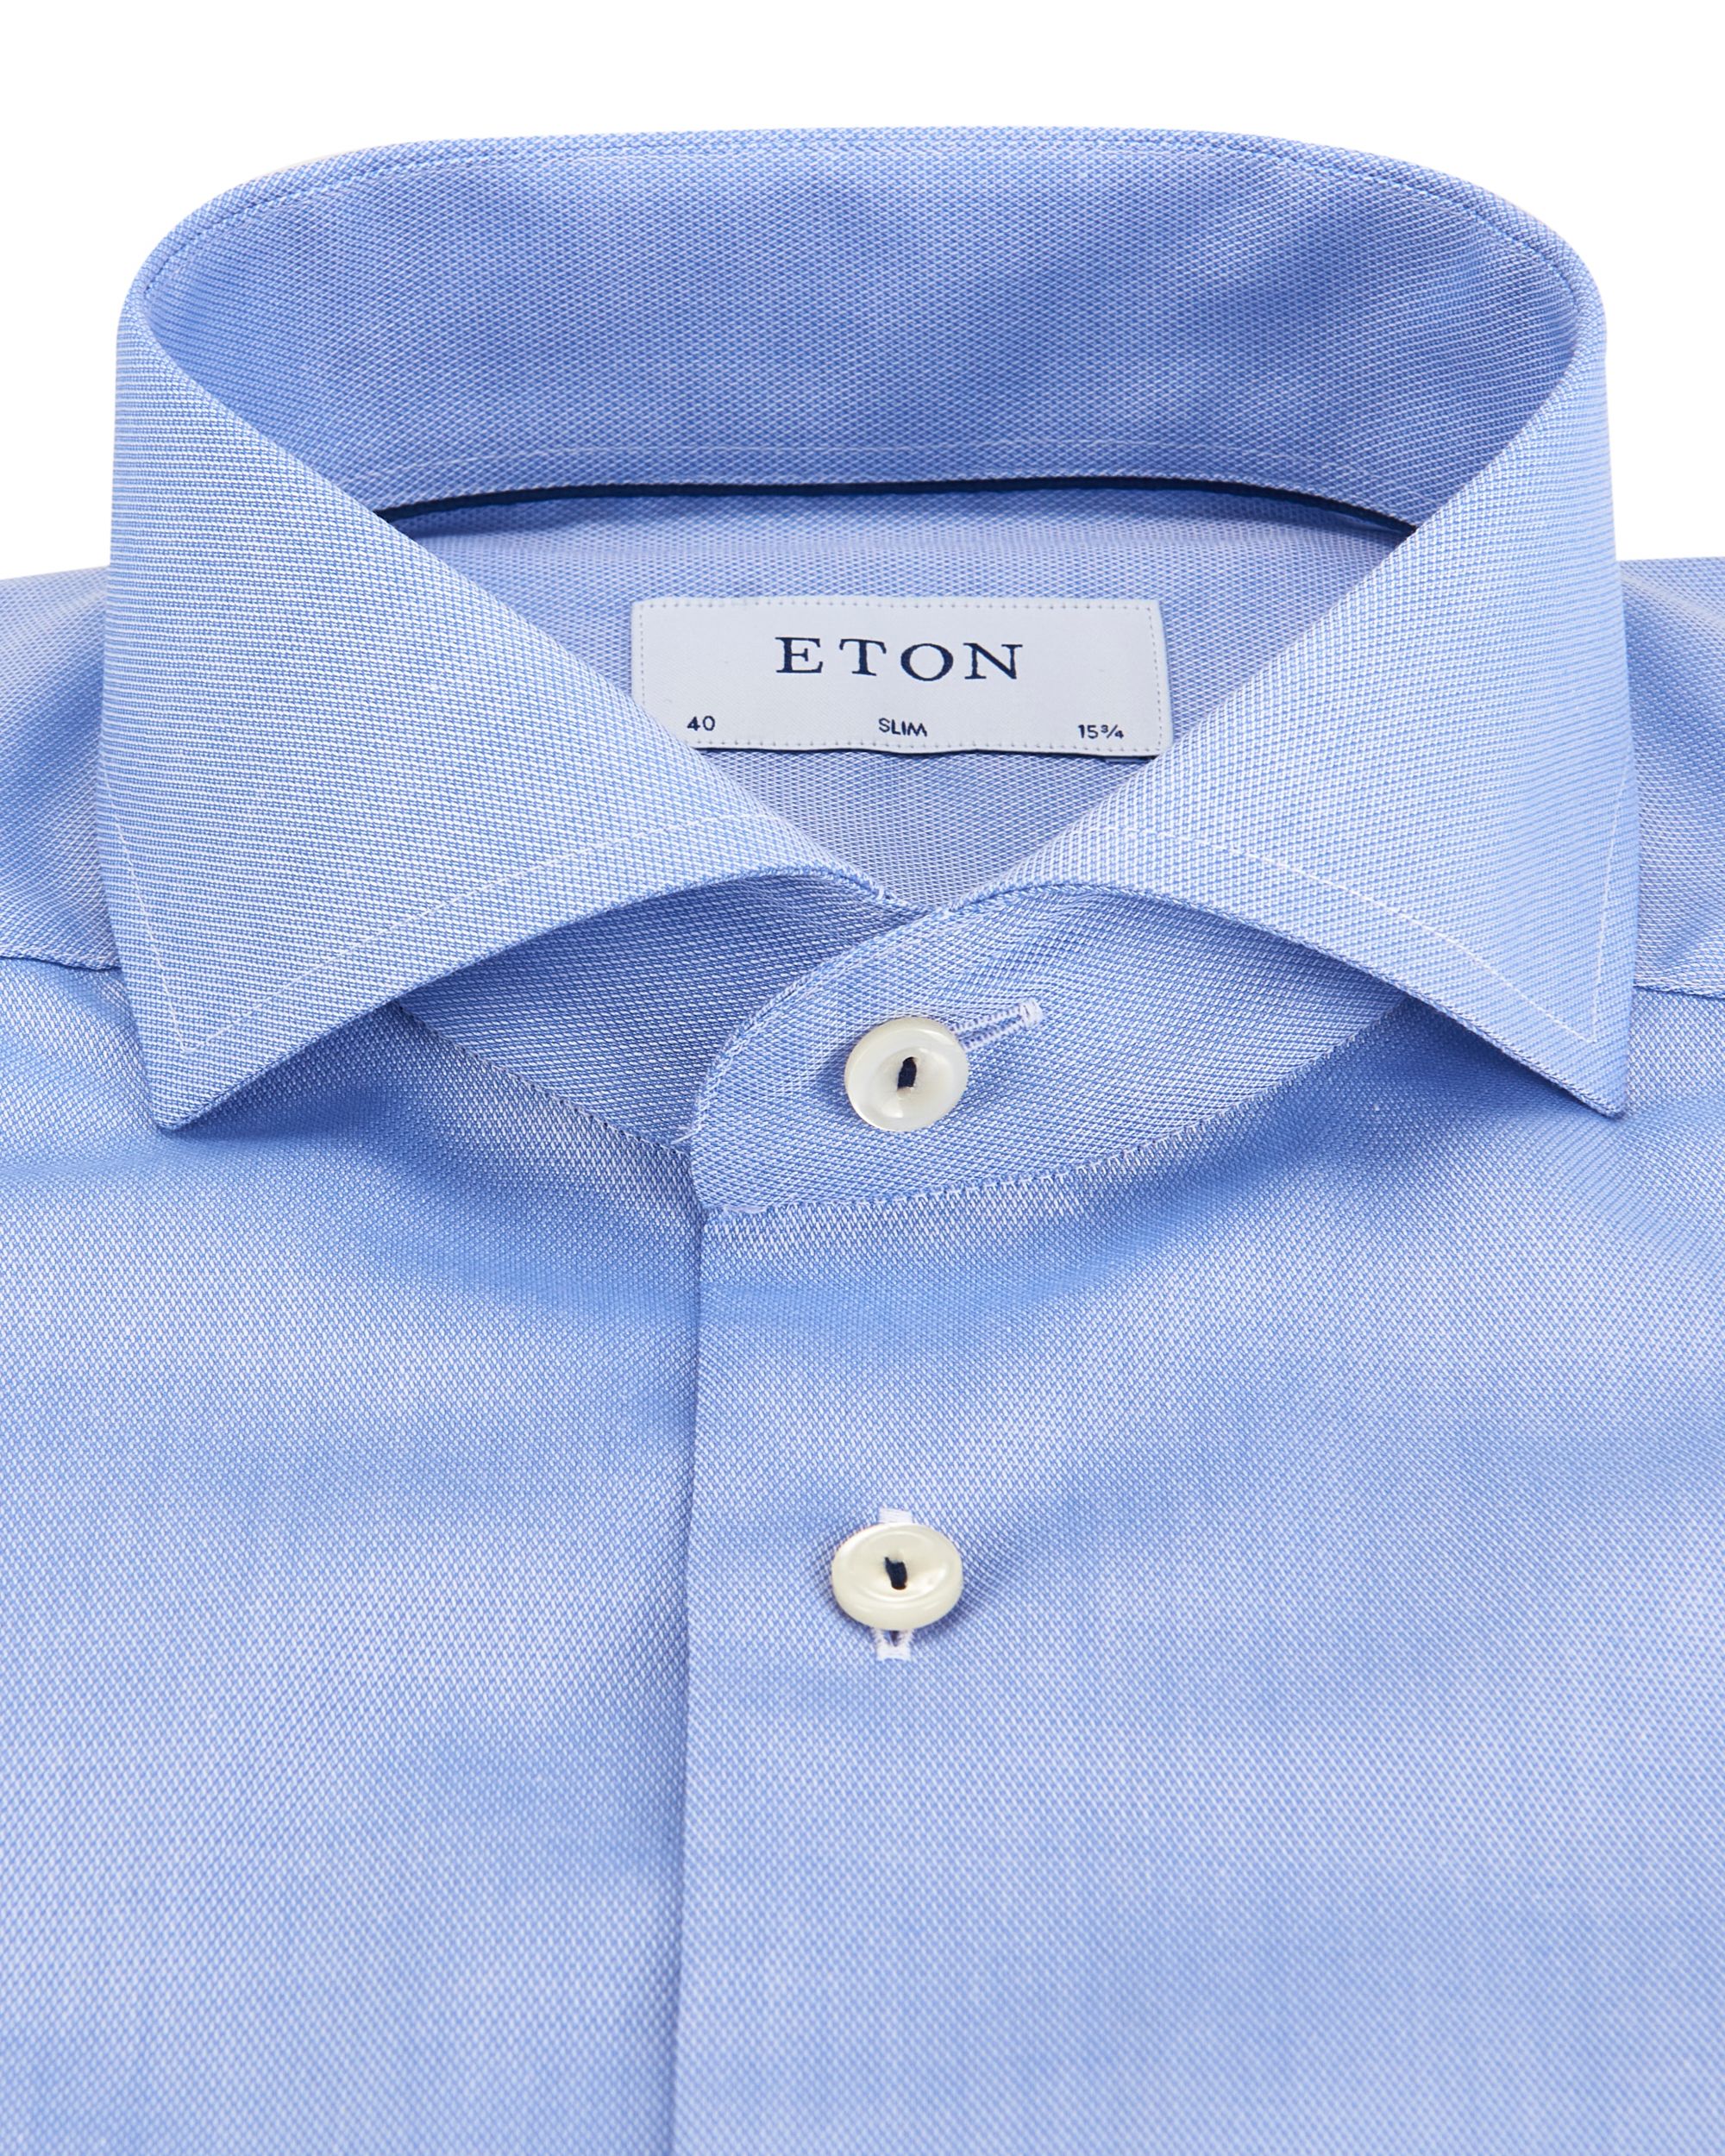 ETON Overhemd LM Licht blauw 082178-001-37/38